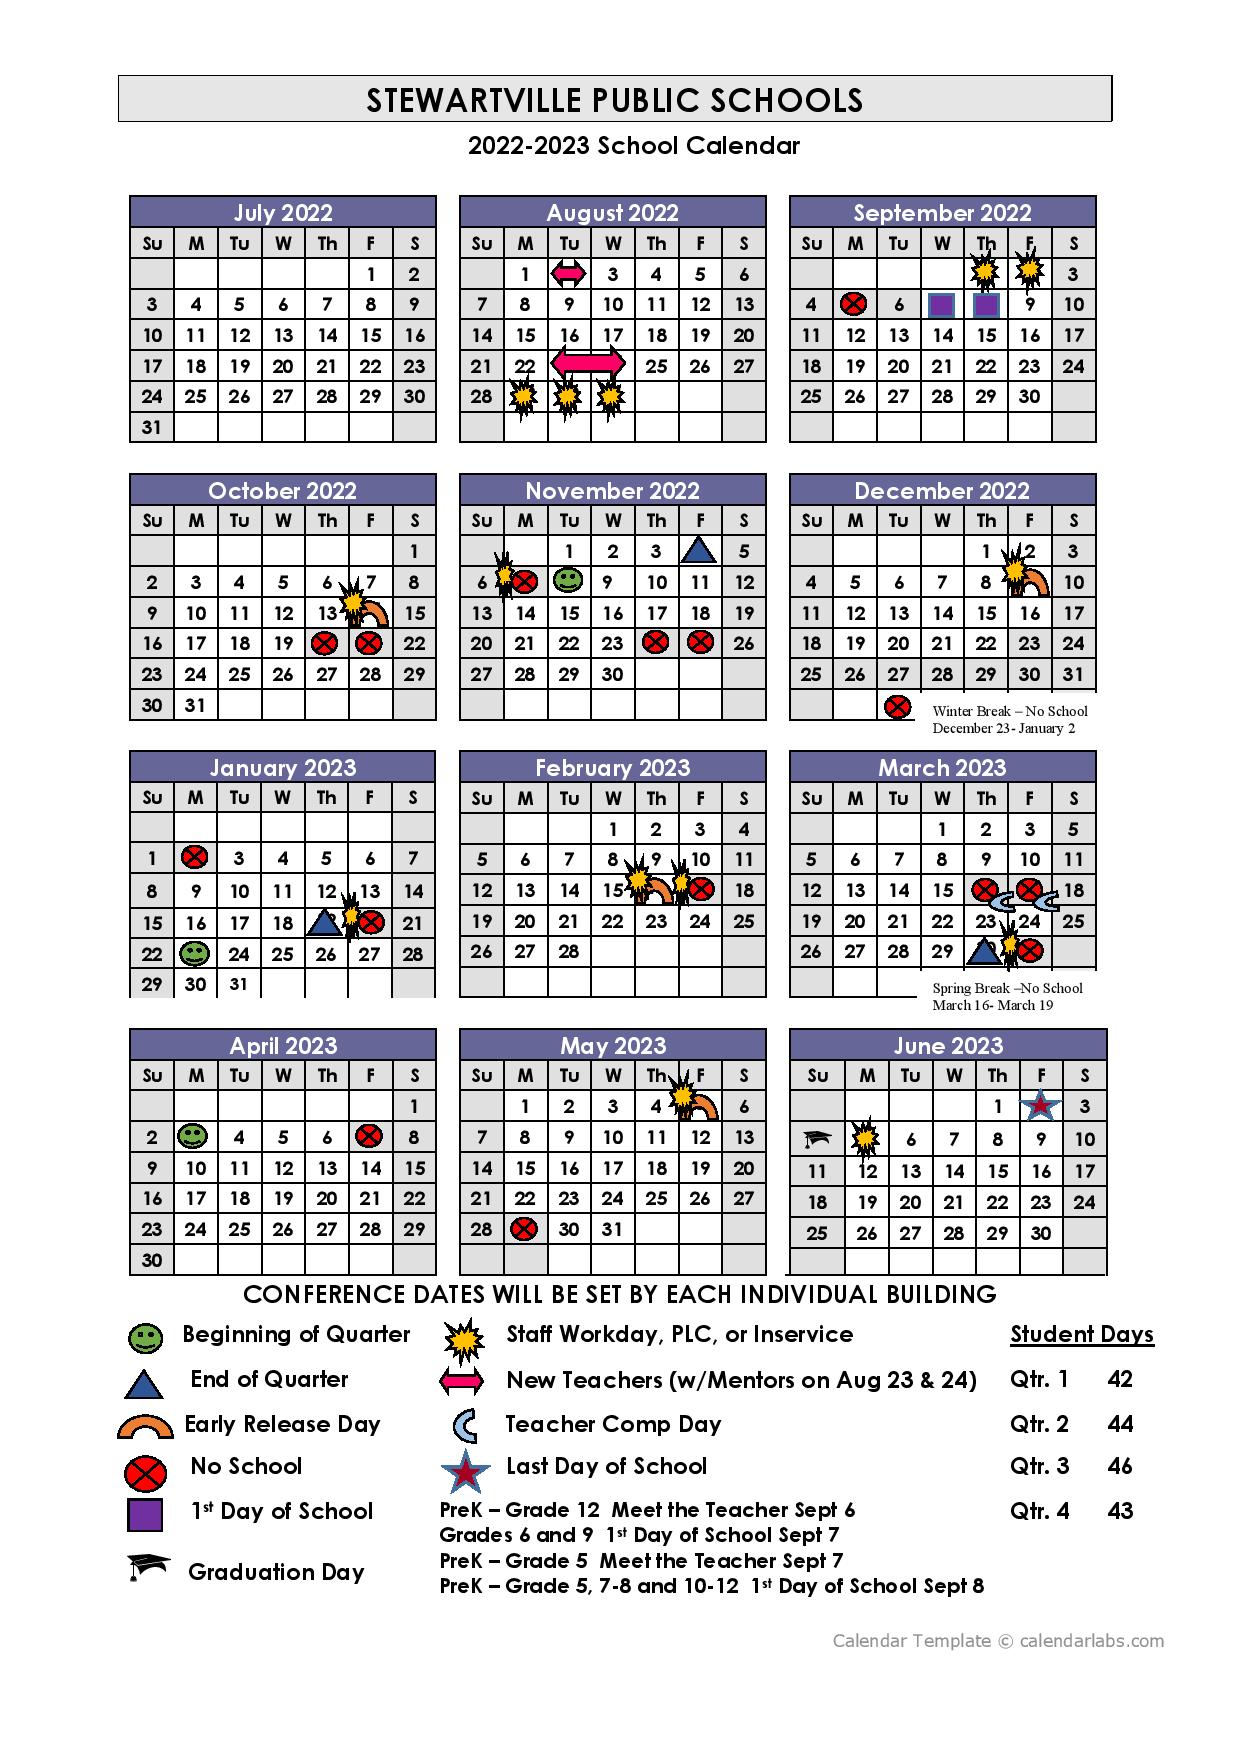 Stewartville Public Schools Calendar 20222023 in PDF